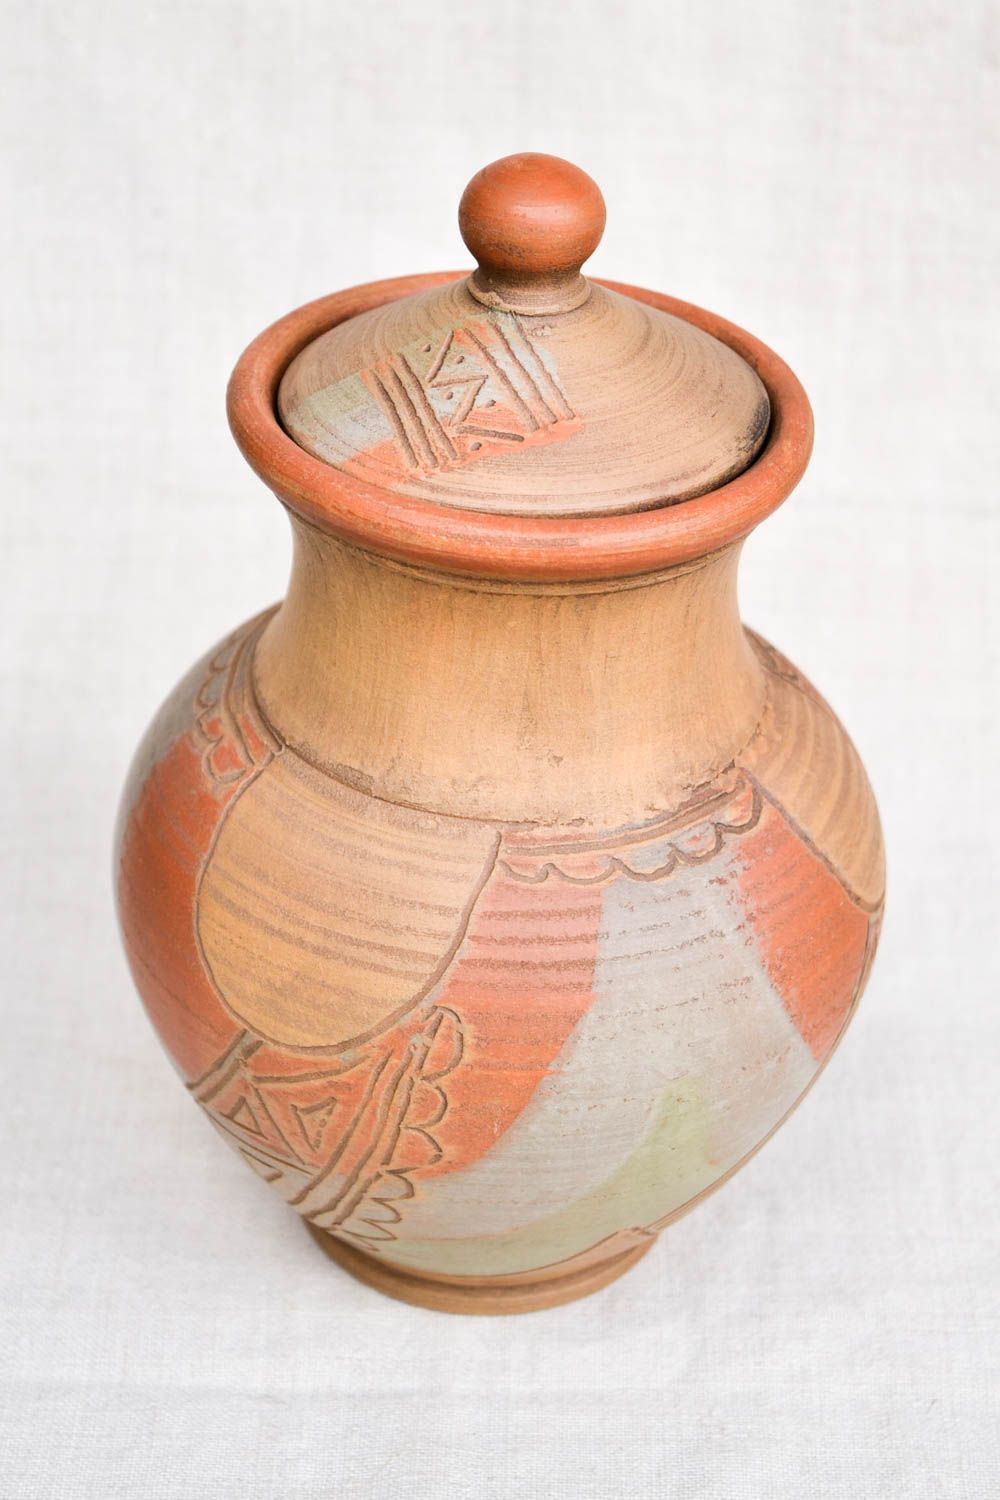 60 oz handmade ceramic milk pitcher in ethnic design 1,65 lb photo 5